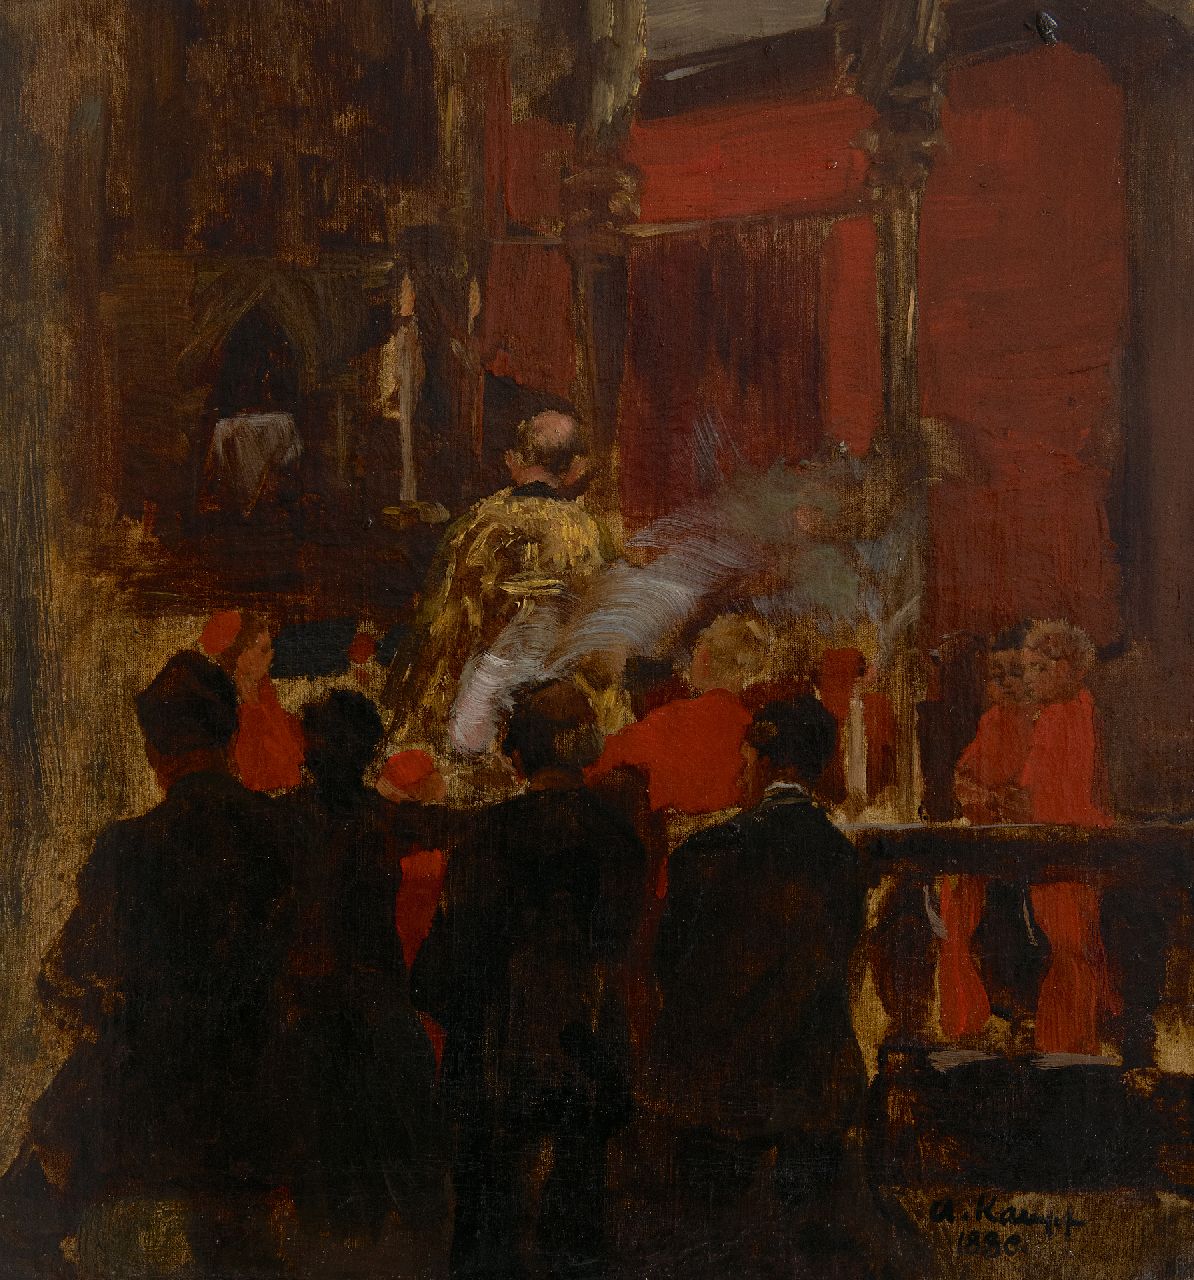 Kampf E.P.A.  | Egbert Paul 'Arthur' Kampf | Schilderijen te koop aangeboden | Bij het koor, olieverf op doek 31,9 x 30,2 cm, gesigneerd rechtsonder en gedateerd 1880